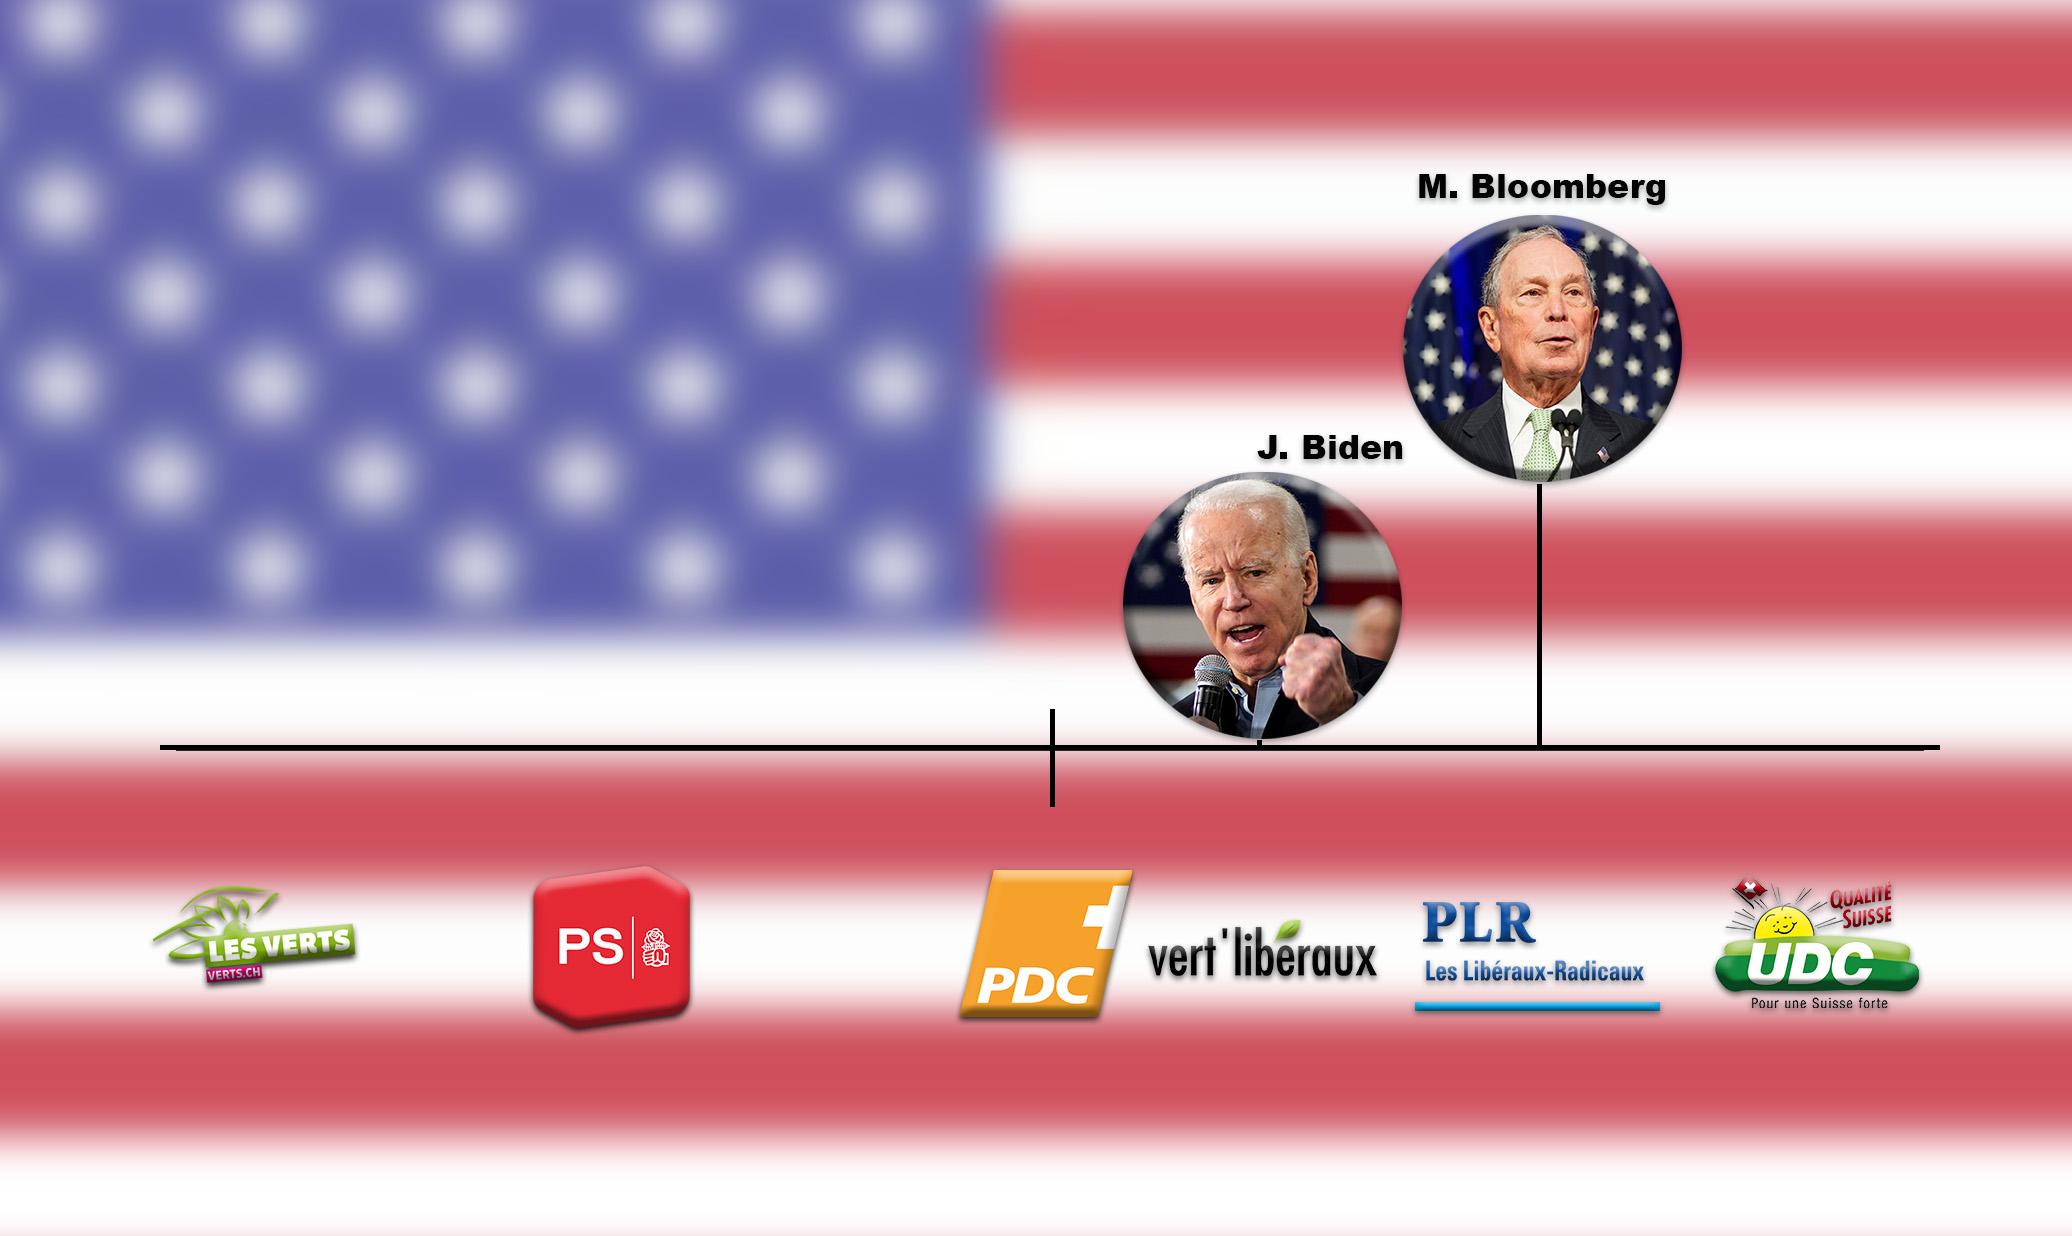 Les candidats Joe Biden et Michael Bloomberg se placeraient entre les Vert'Libéraux et le Parti Libéral Radical. [RTS - Mouna Hussain / Guillaume Martinez]